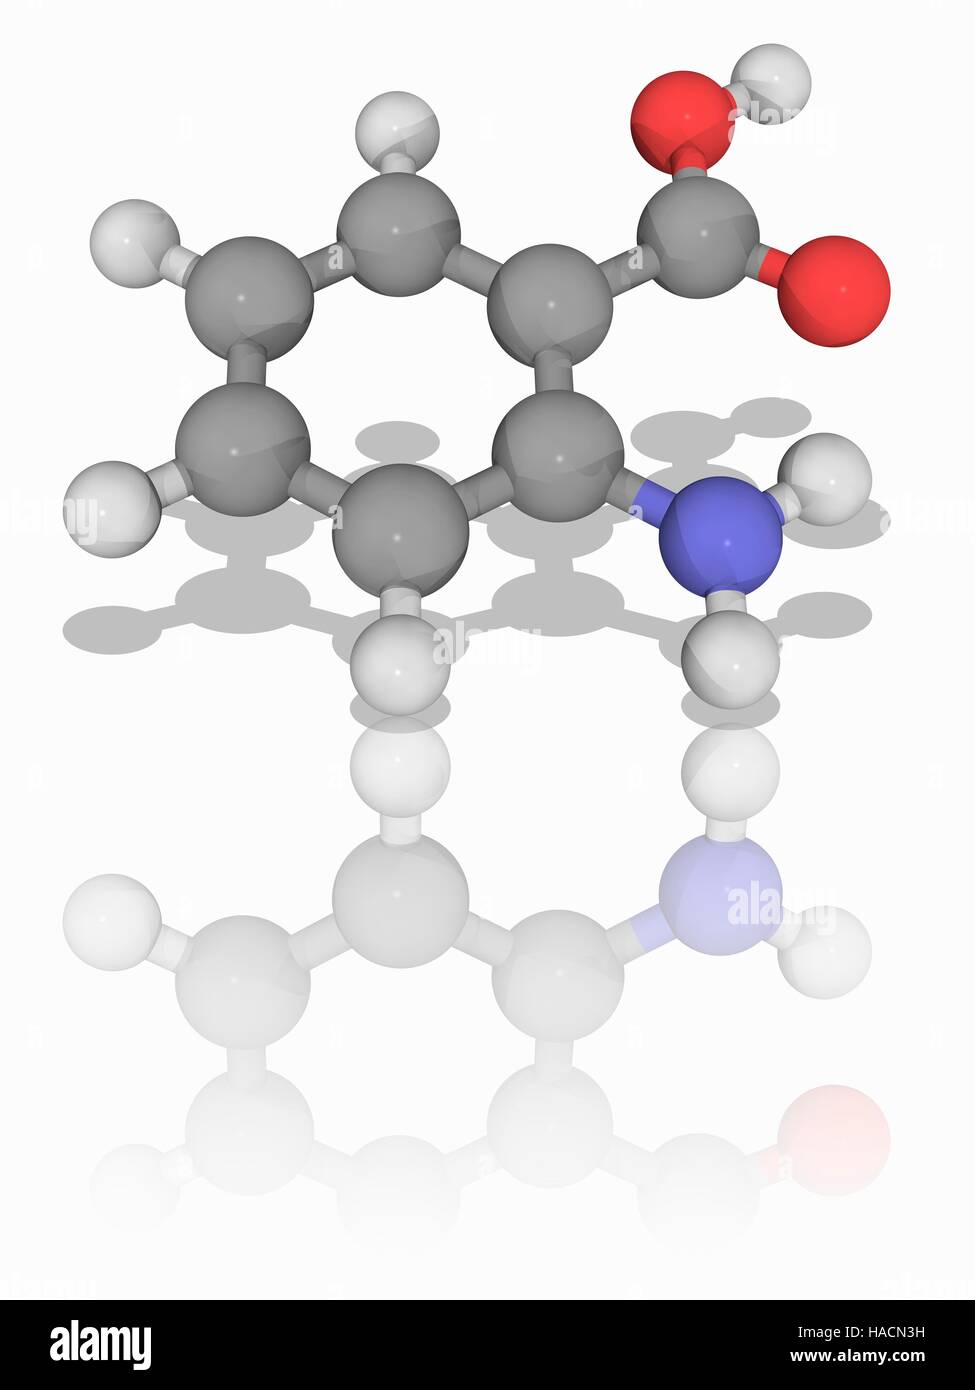 Anthranilsäure Säure. Molekülmodell der aromatischen Verbindung Anthranilsäure Säure (C7. H7. N.O2). Diese organische Verbindung dient als Zwischenprodukt zur Herstellung von Farbstoffen, Pigmenten und Saccharin. Atome als Kugeln dargestellt werden und sind farblich gekennzeichnet: Kohlenstoff (grau), Wasserstoff (weiß), Stickstoff (blau) und Sauerstoff (rot). Abbildung. Stockfoto